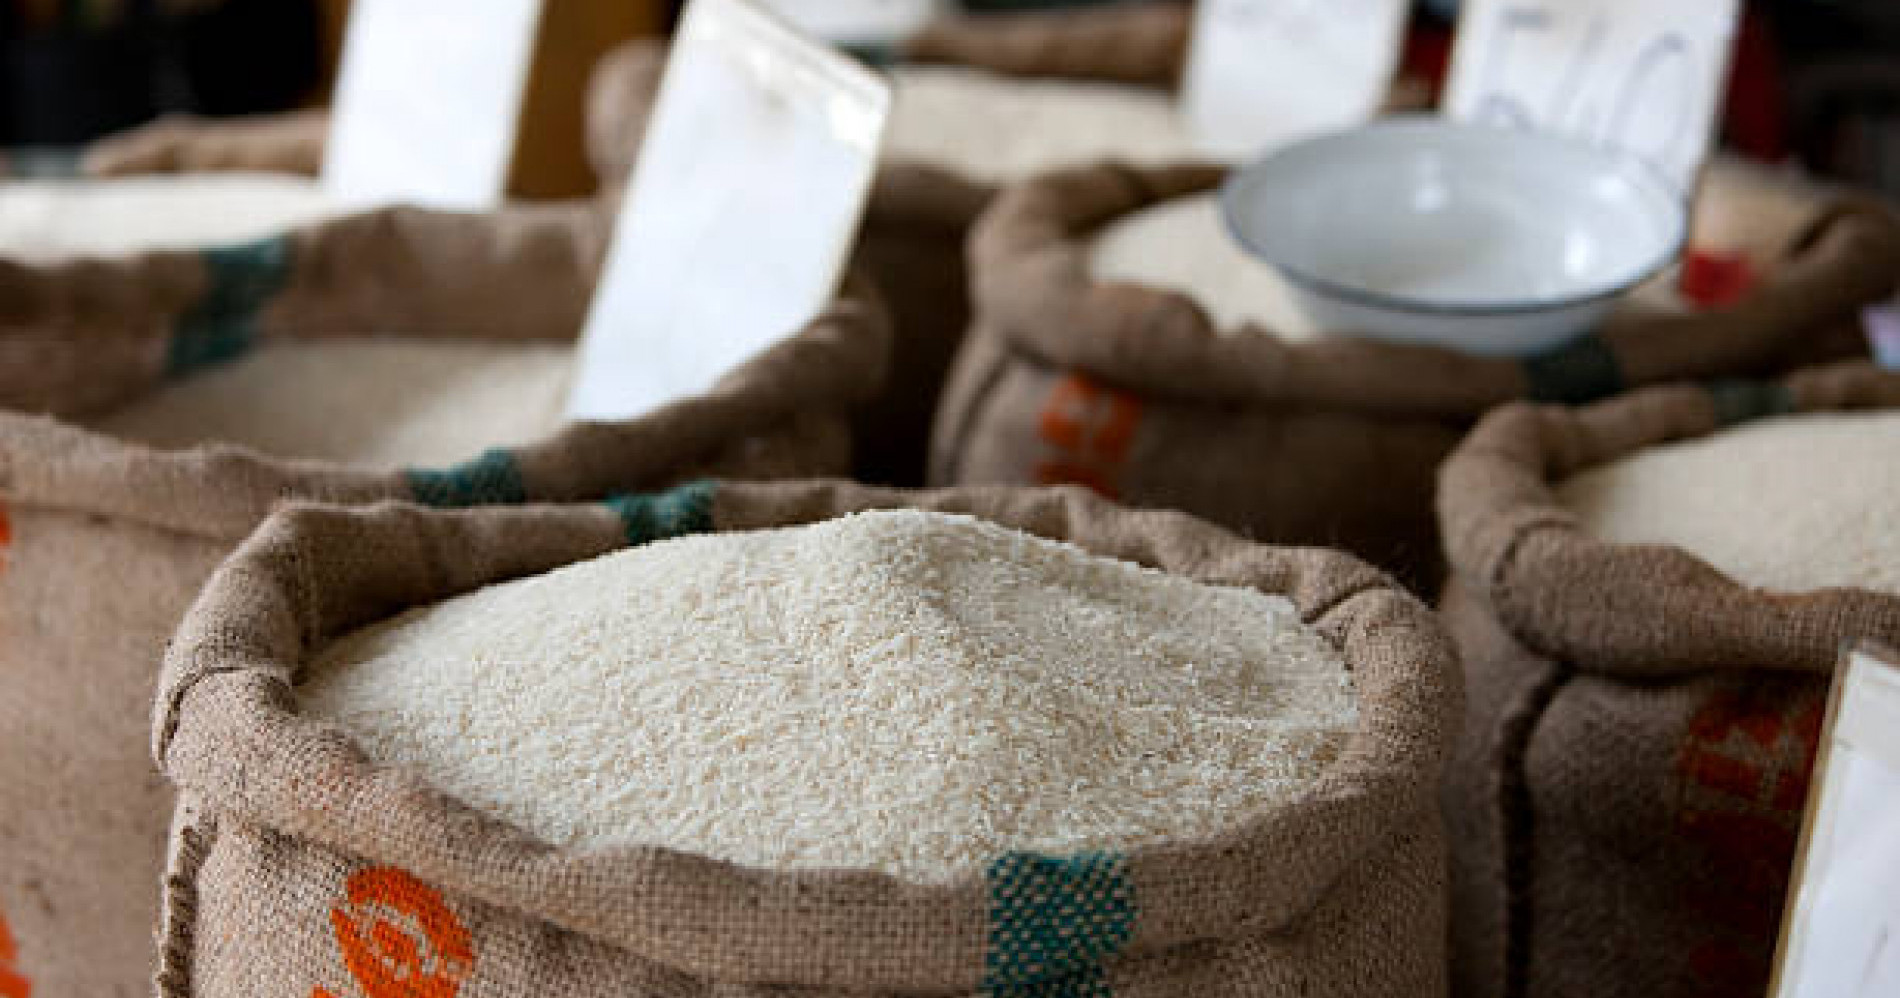 Harga beras mulai naik jelang musim kemarau (Sumber gambar: iStockphoto/enviromantic)